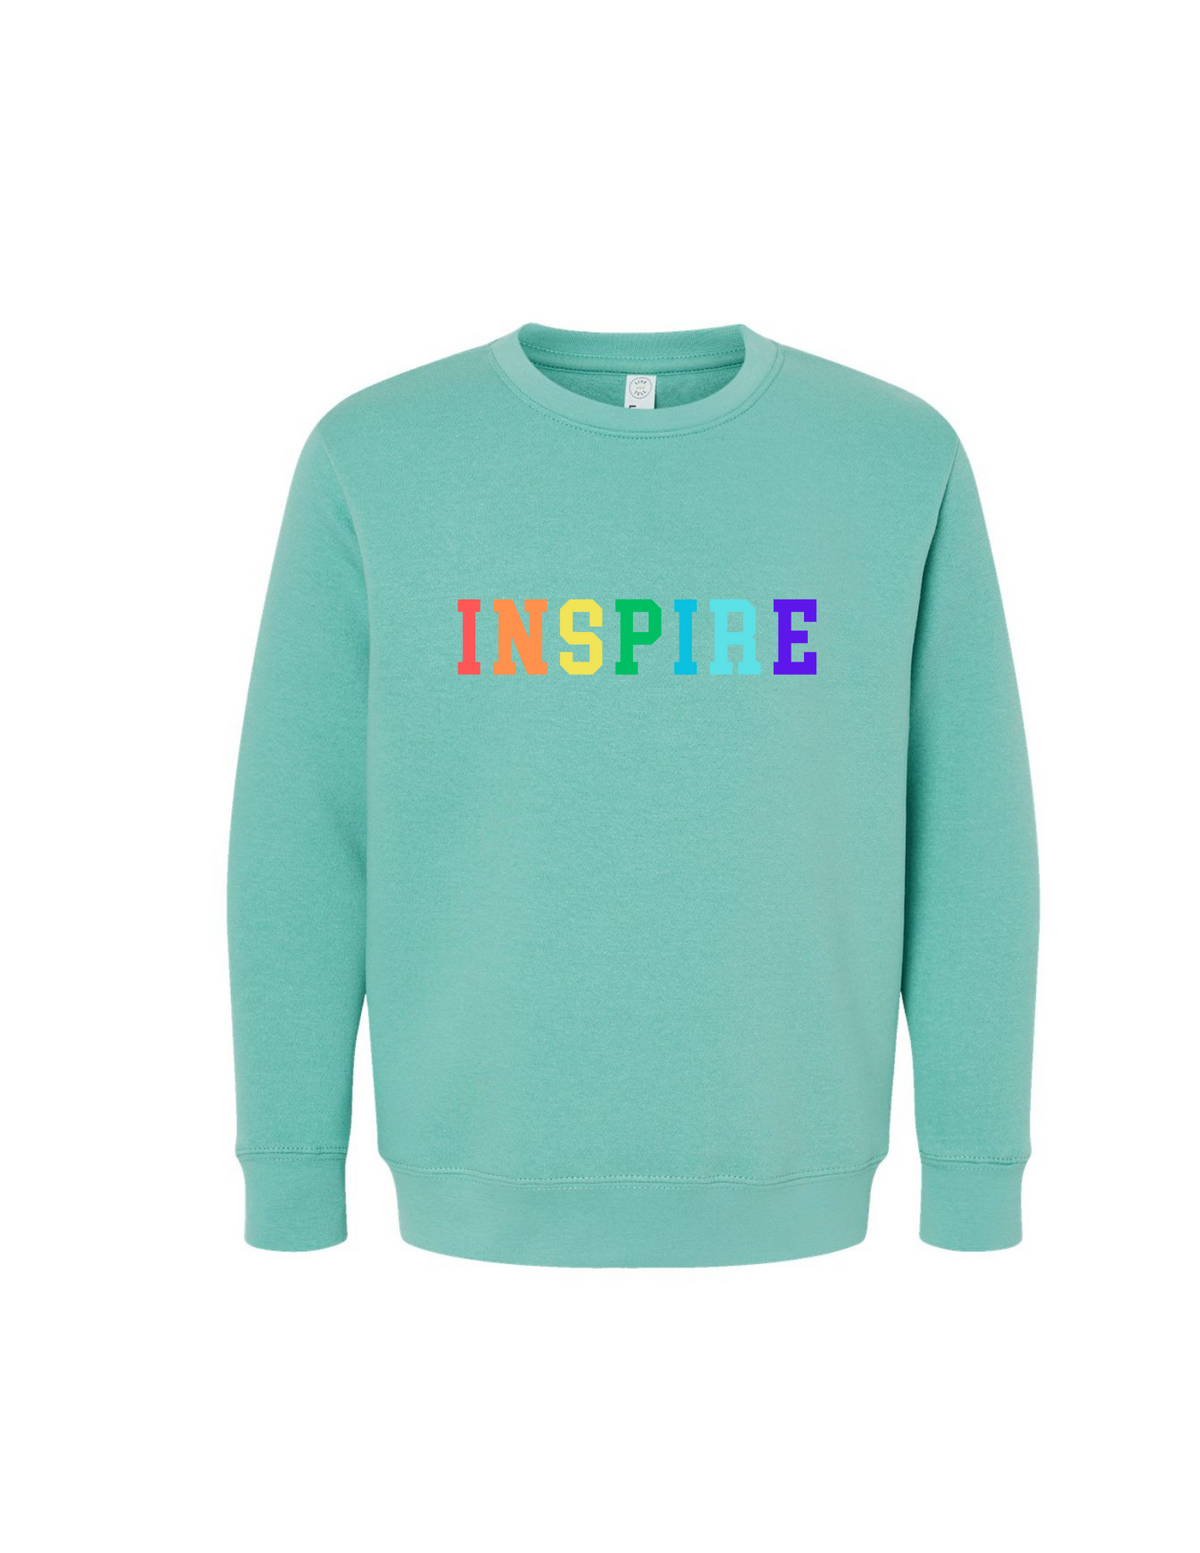 Inspire Seafoam Sweatshirt Youth + Adult - Aspen Lane 